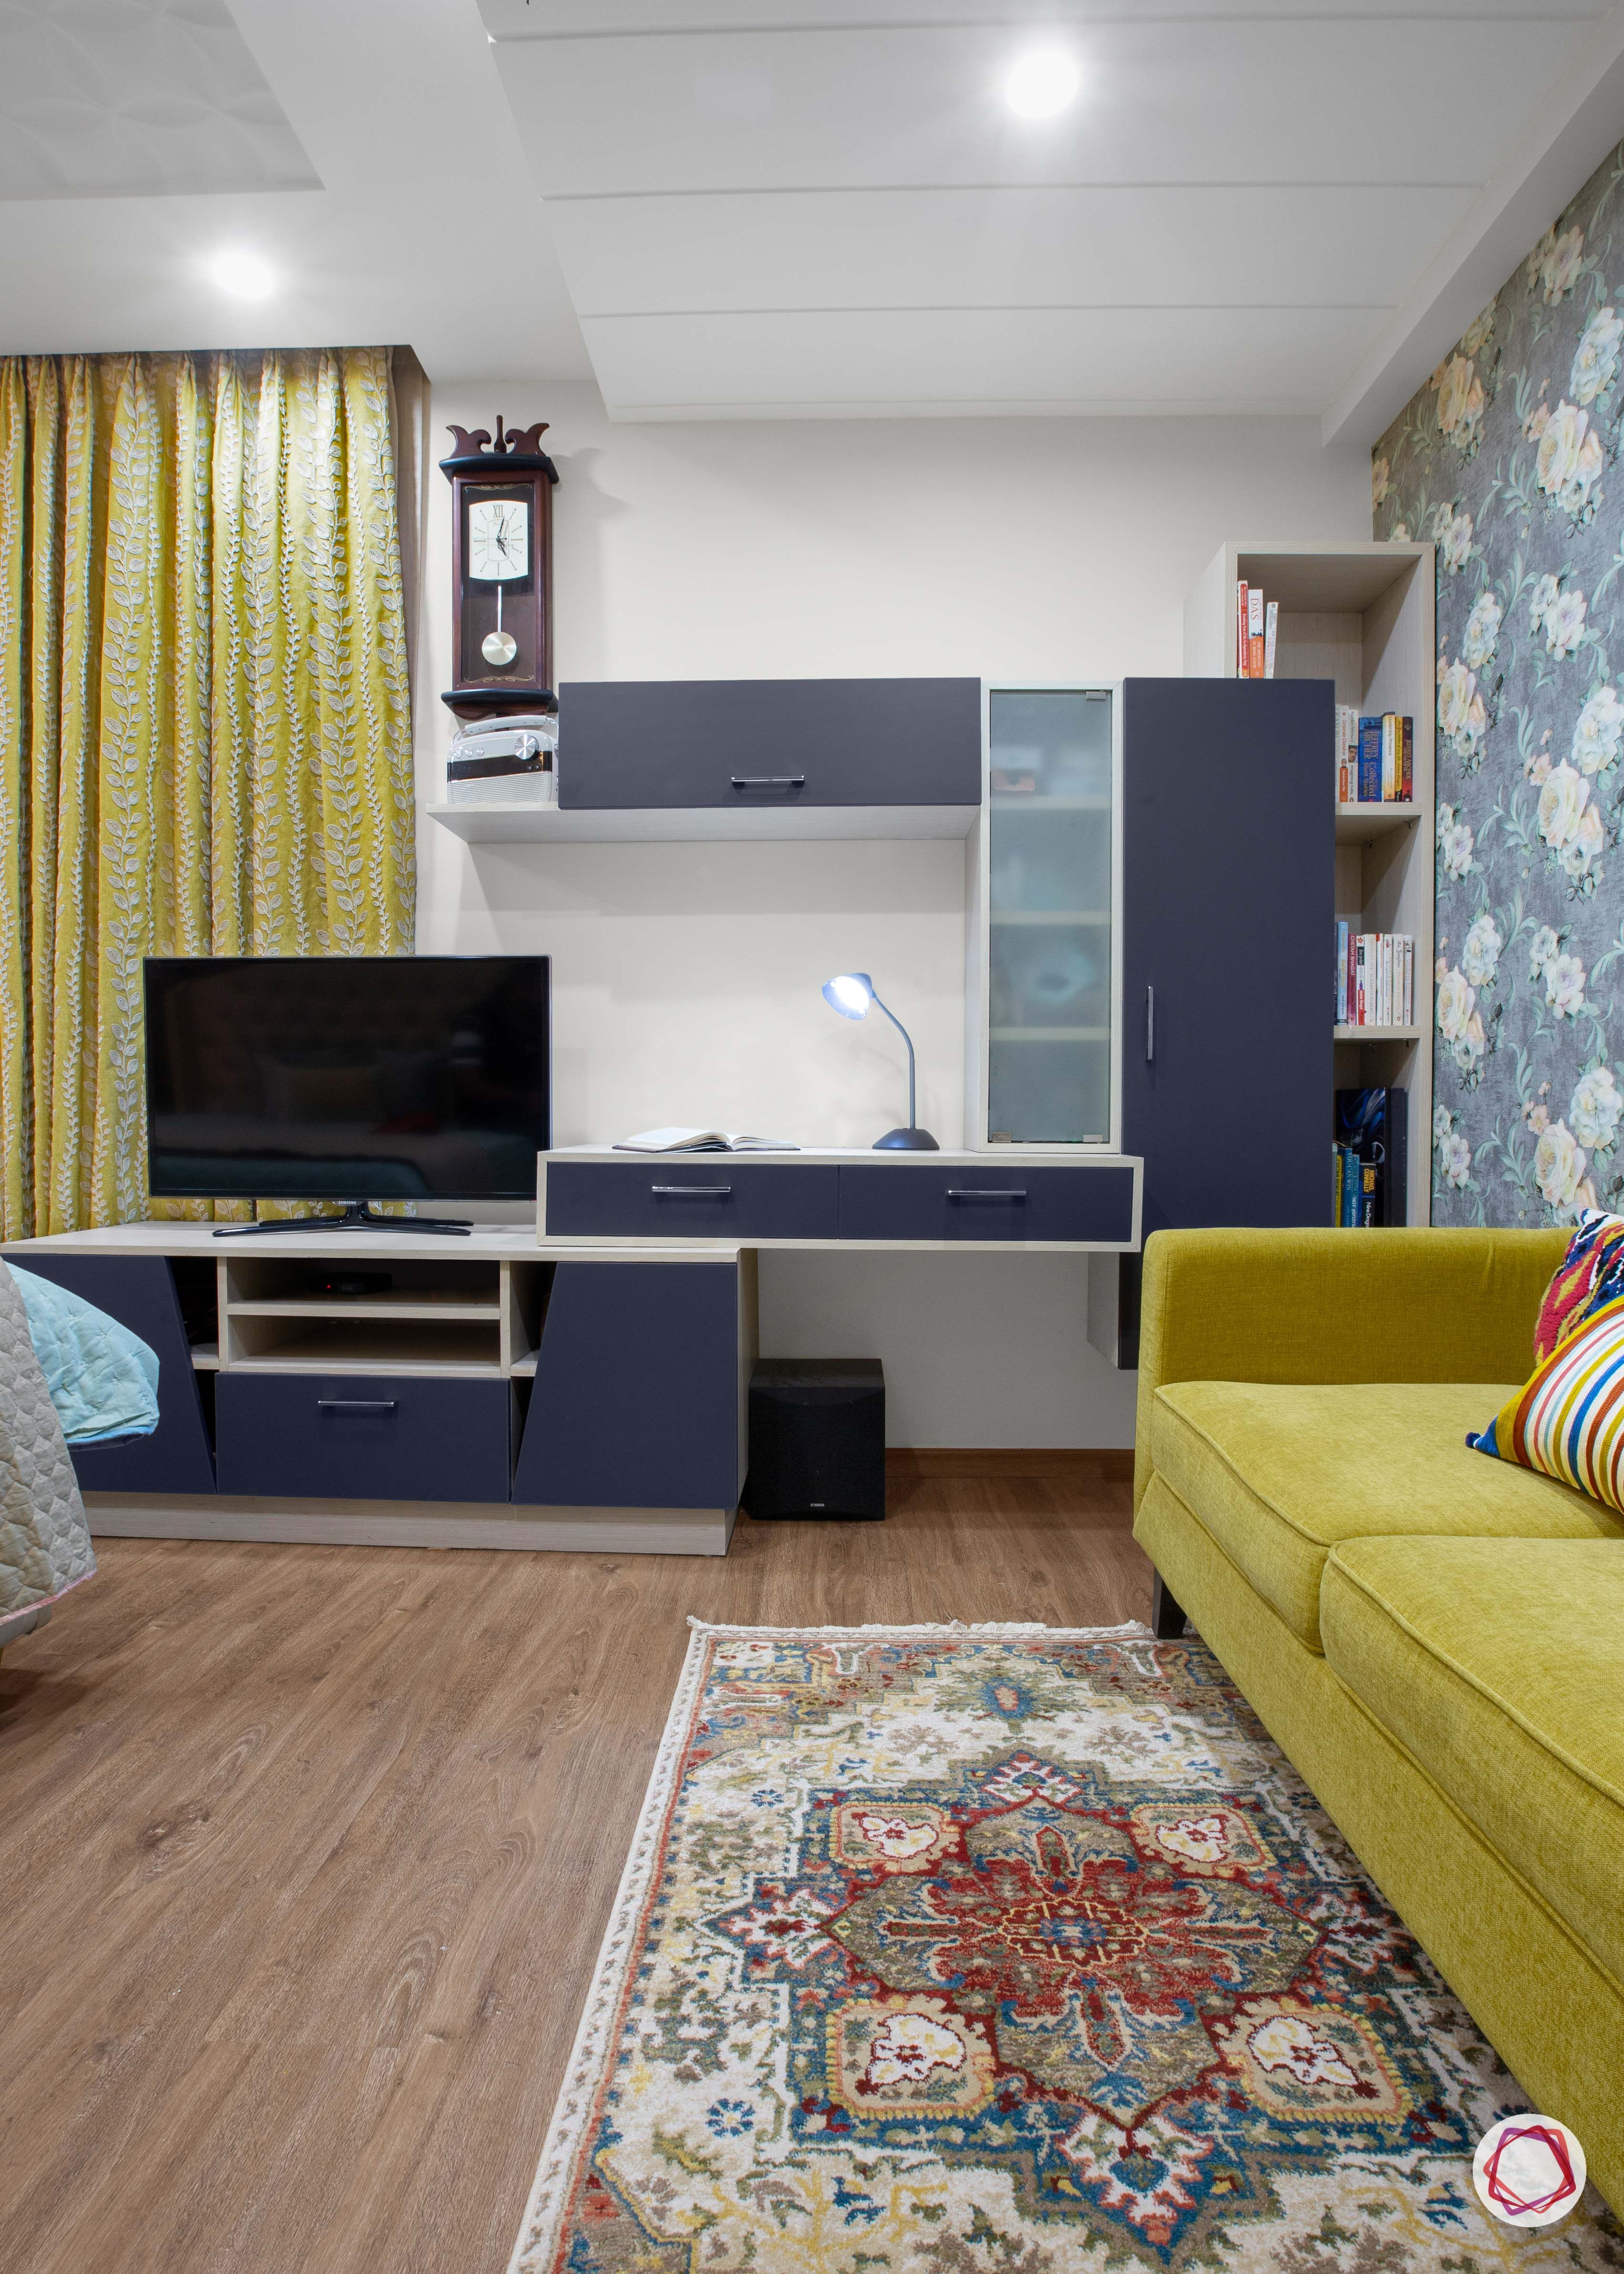 3 bhk flats in noida master bedroom TV